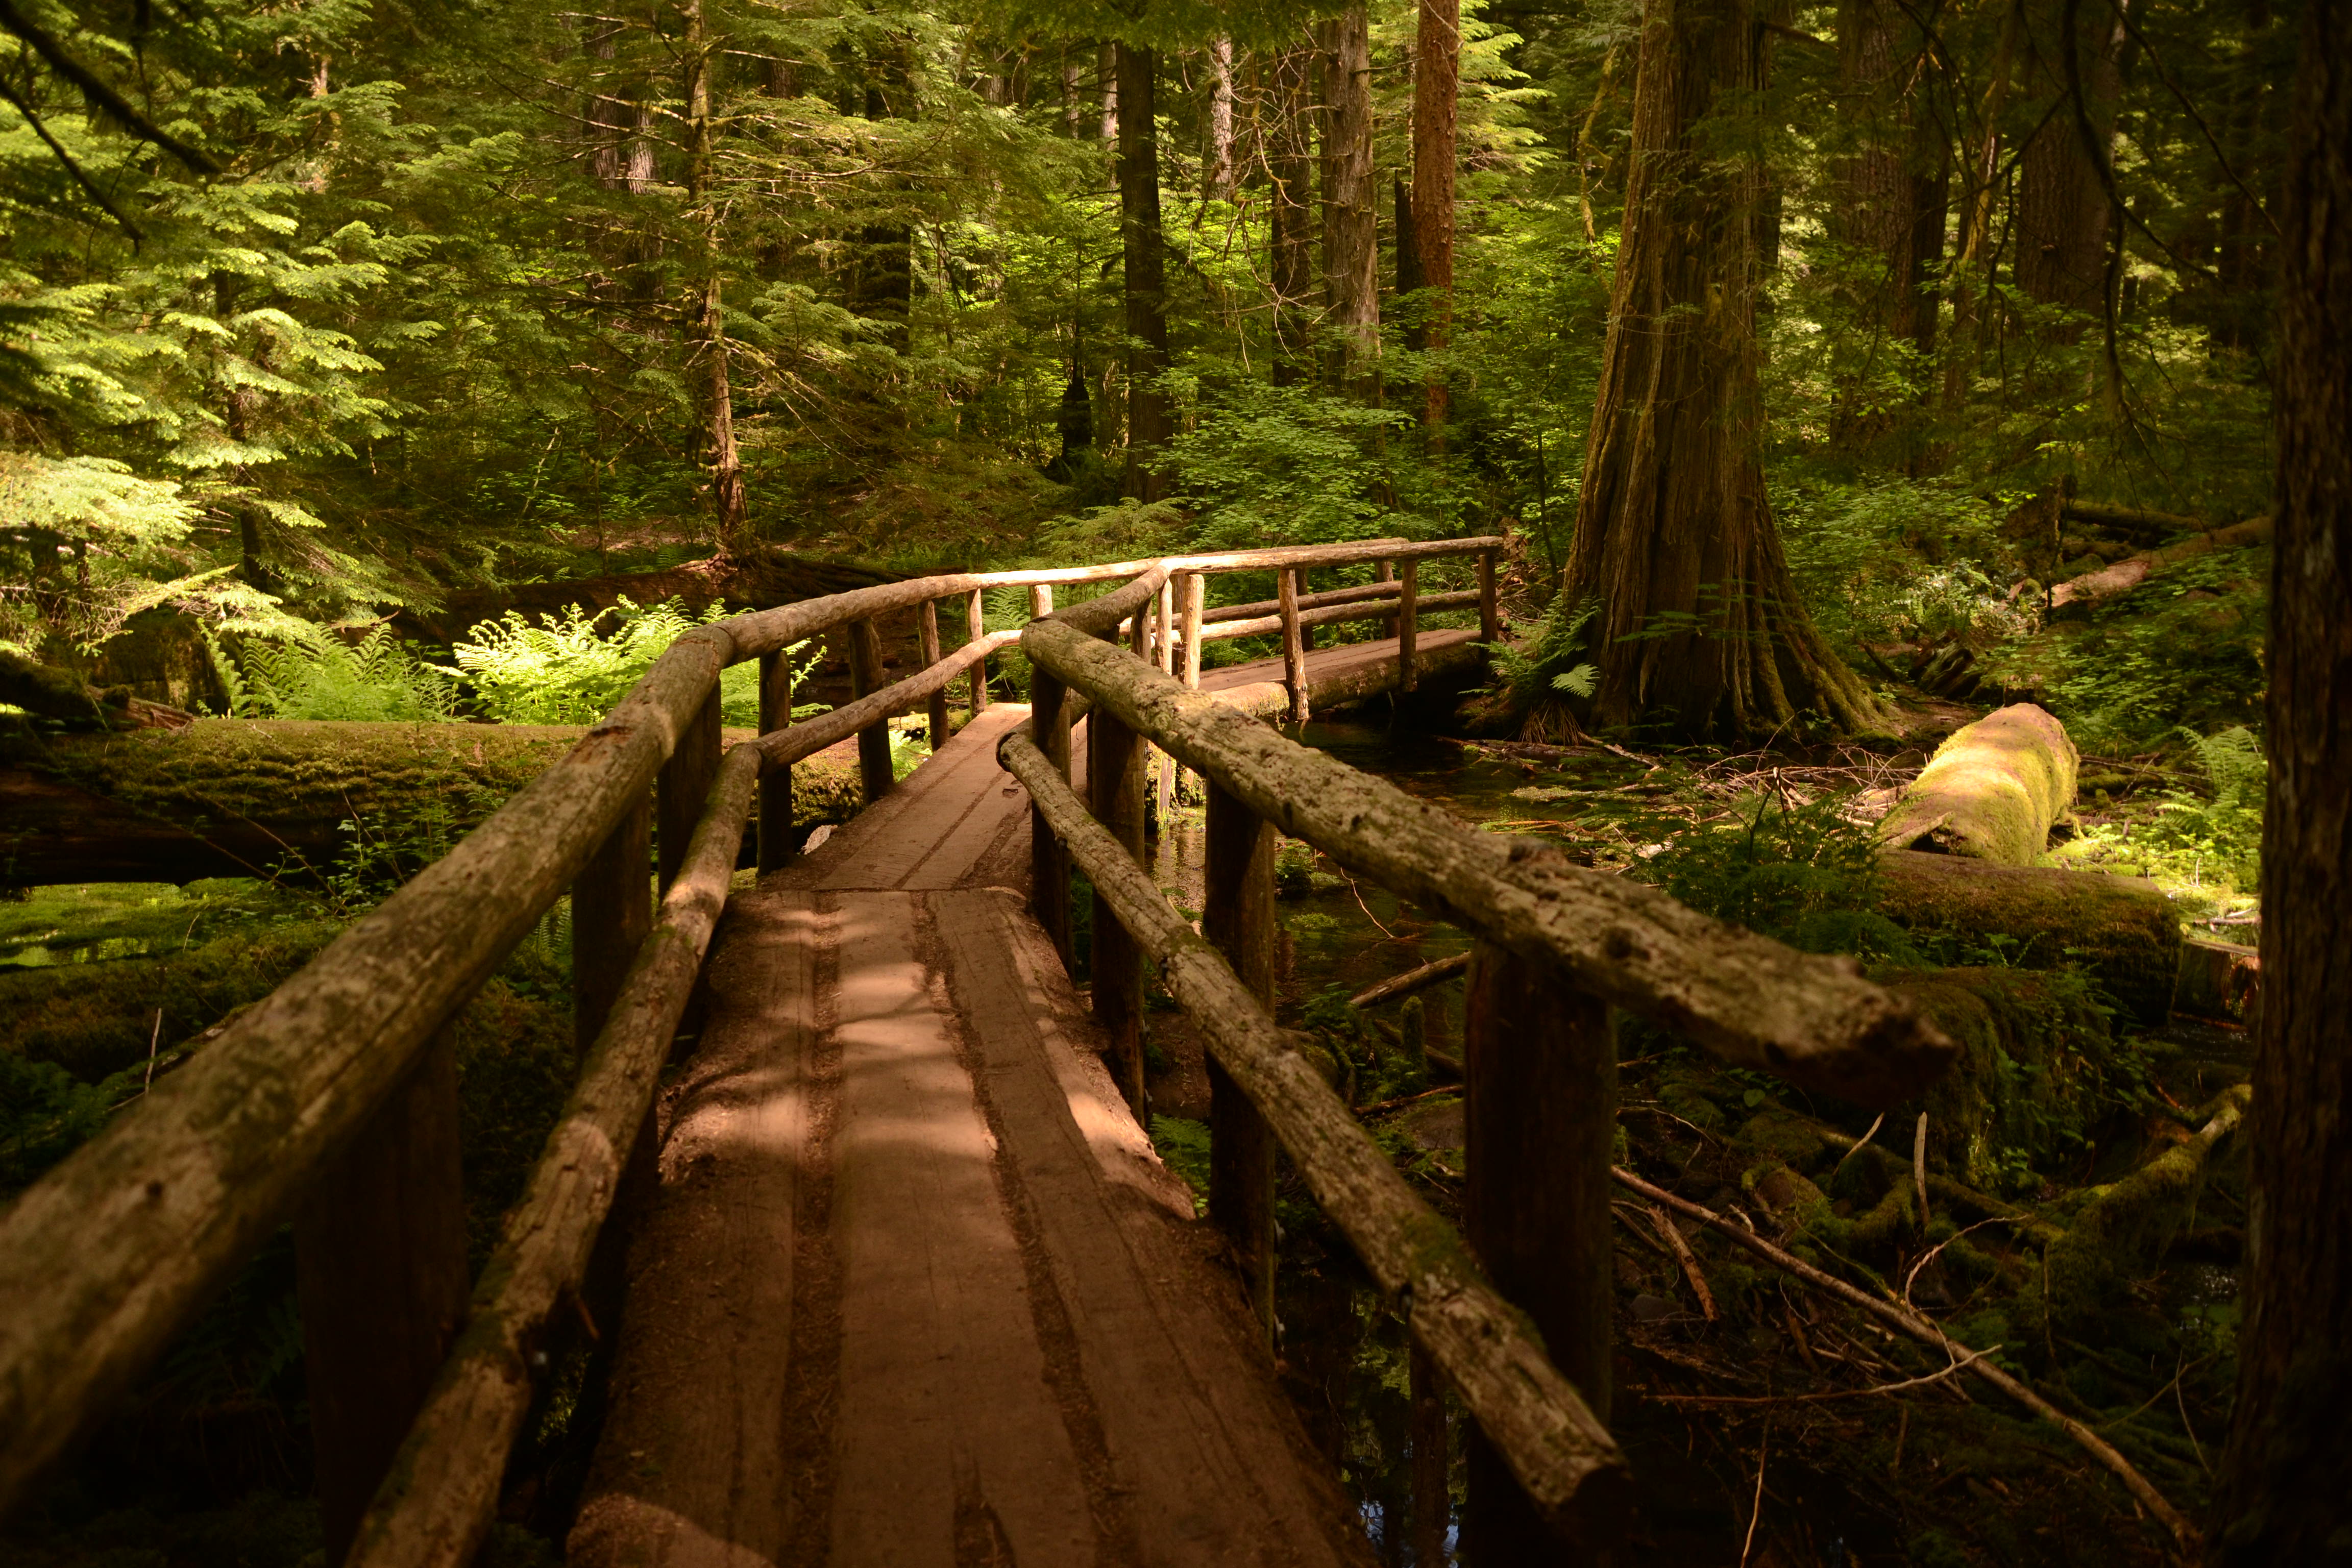 footbridge, Path, Oregon, Wooden surface, Pine trees, Landscape Wallpaper